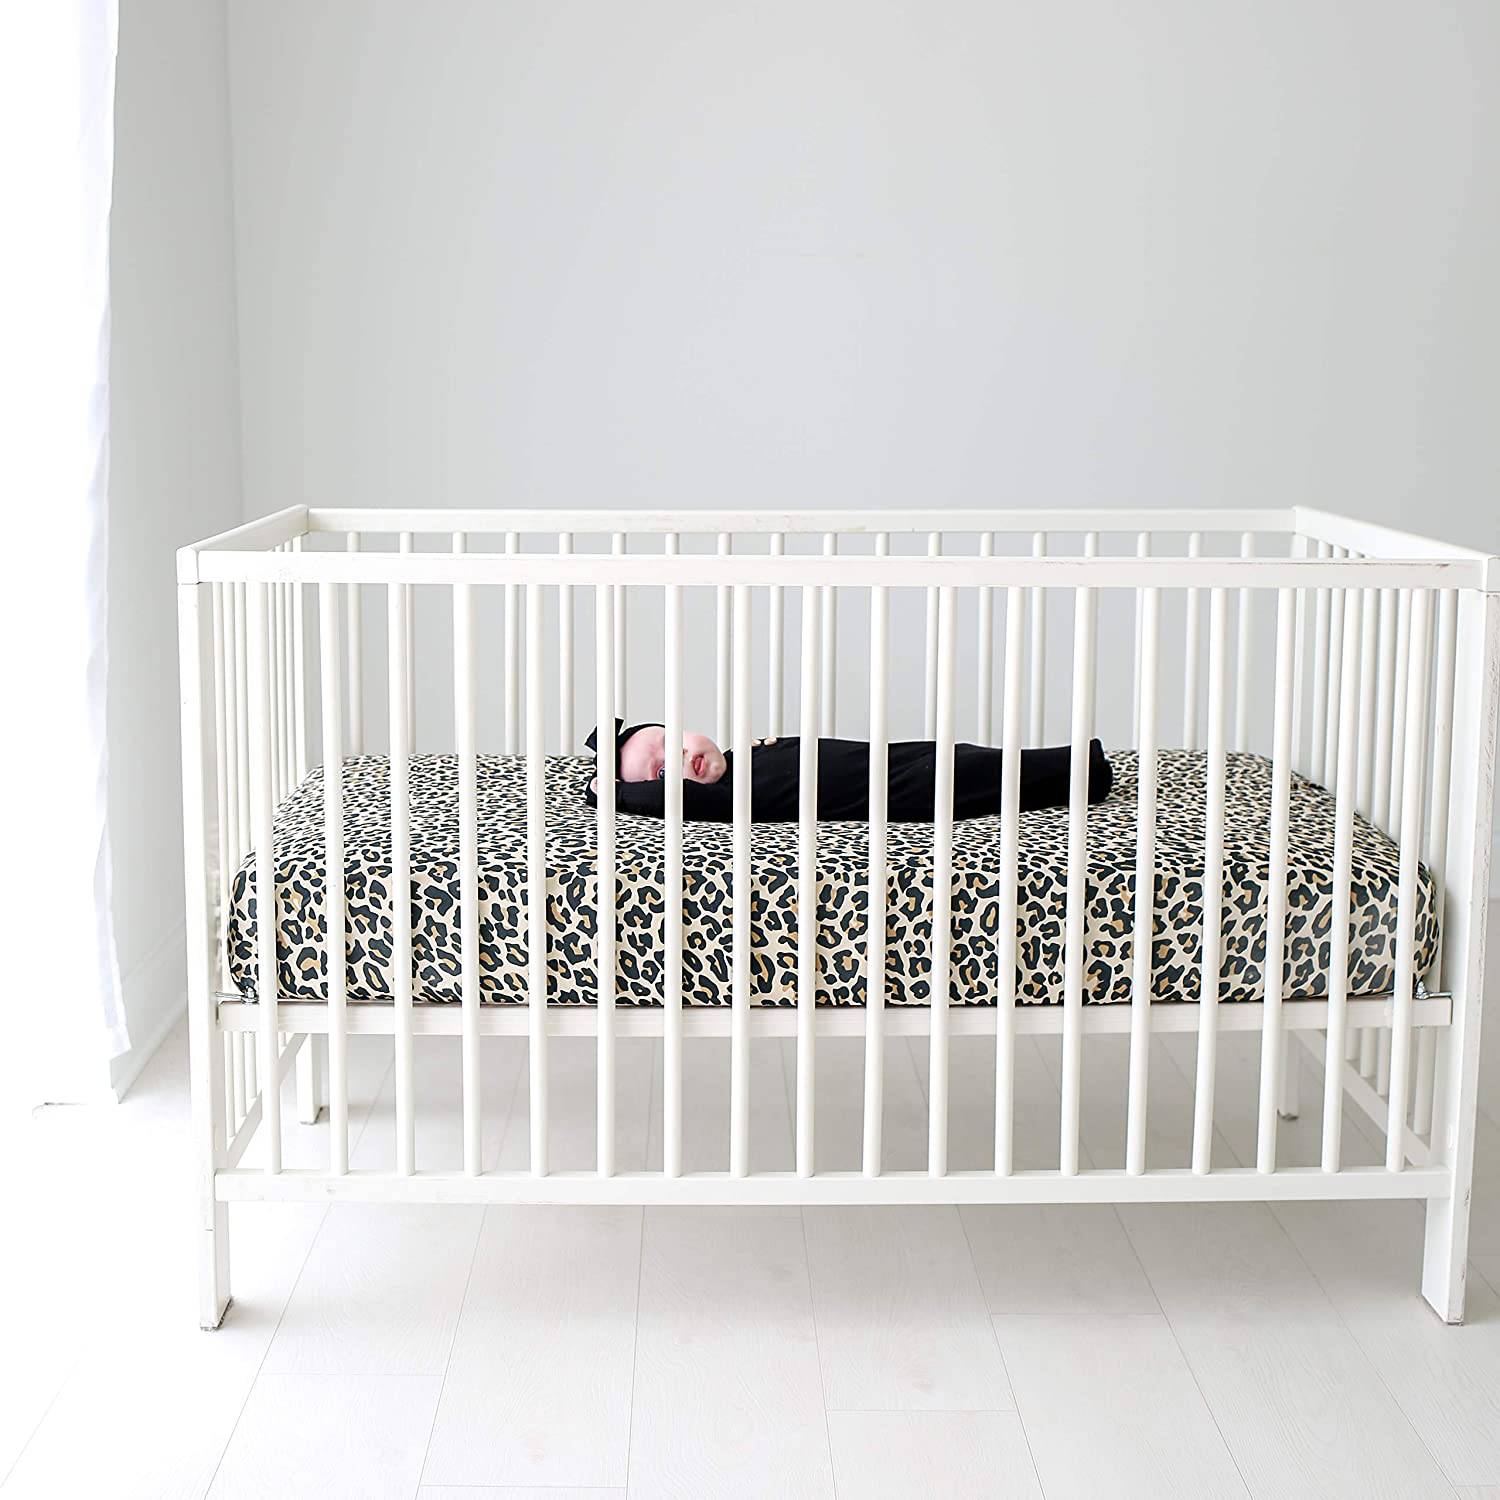 Lana Leopard Tan Crib Sheet - Twinkle Twinkle Little One